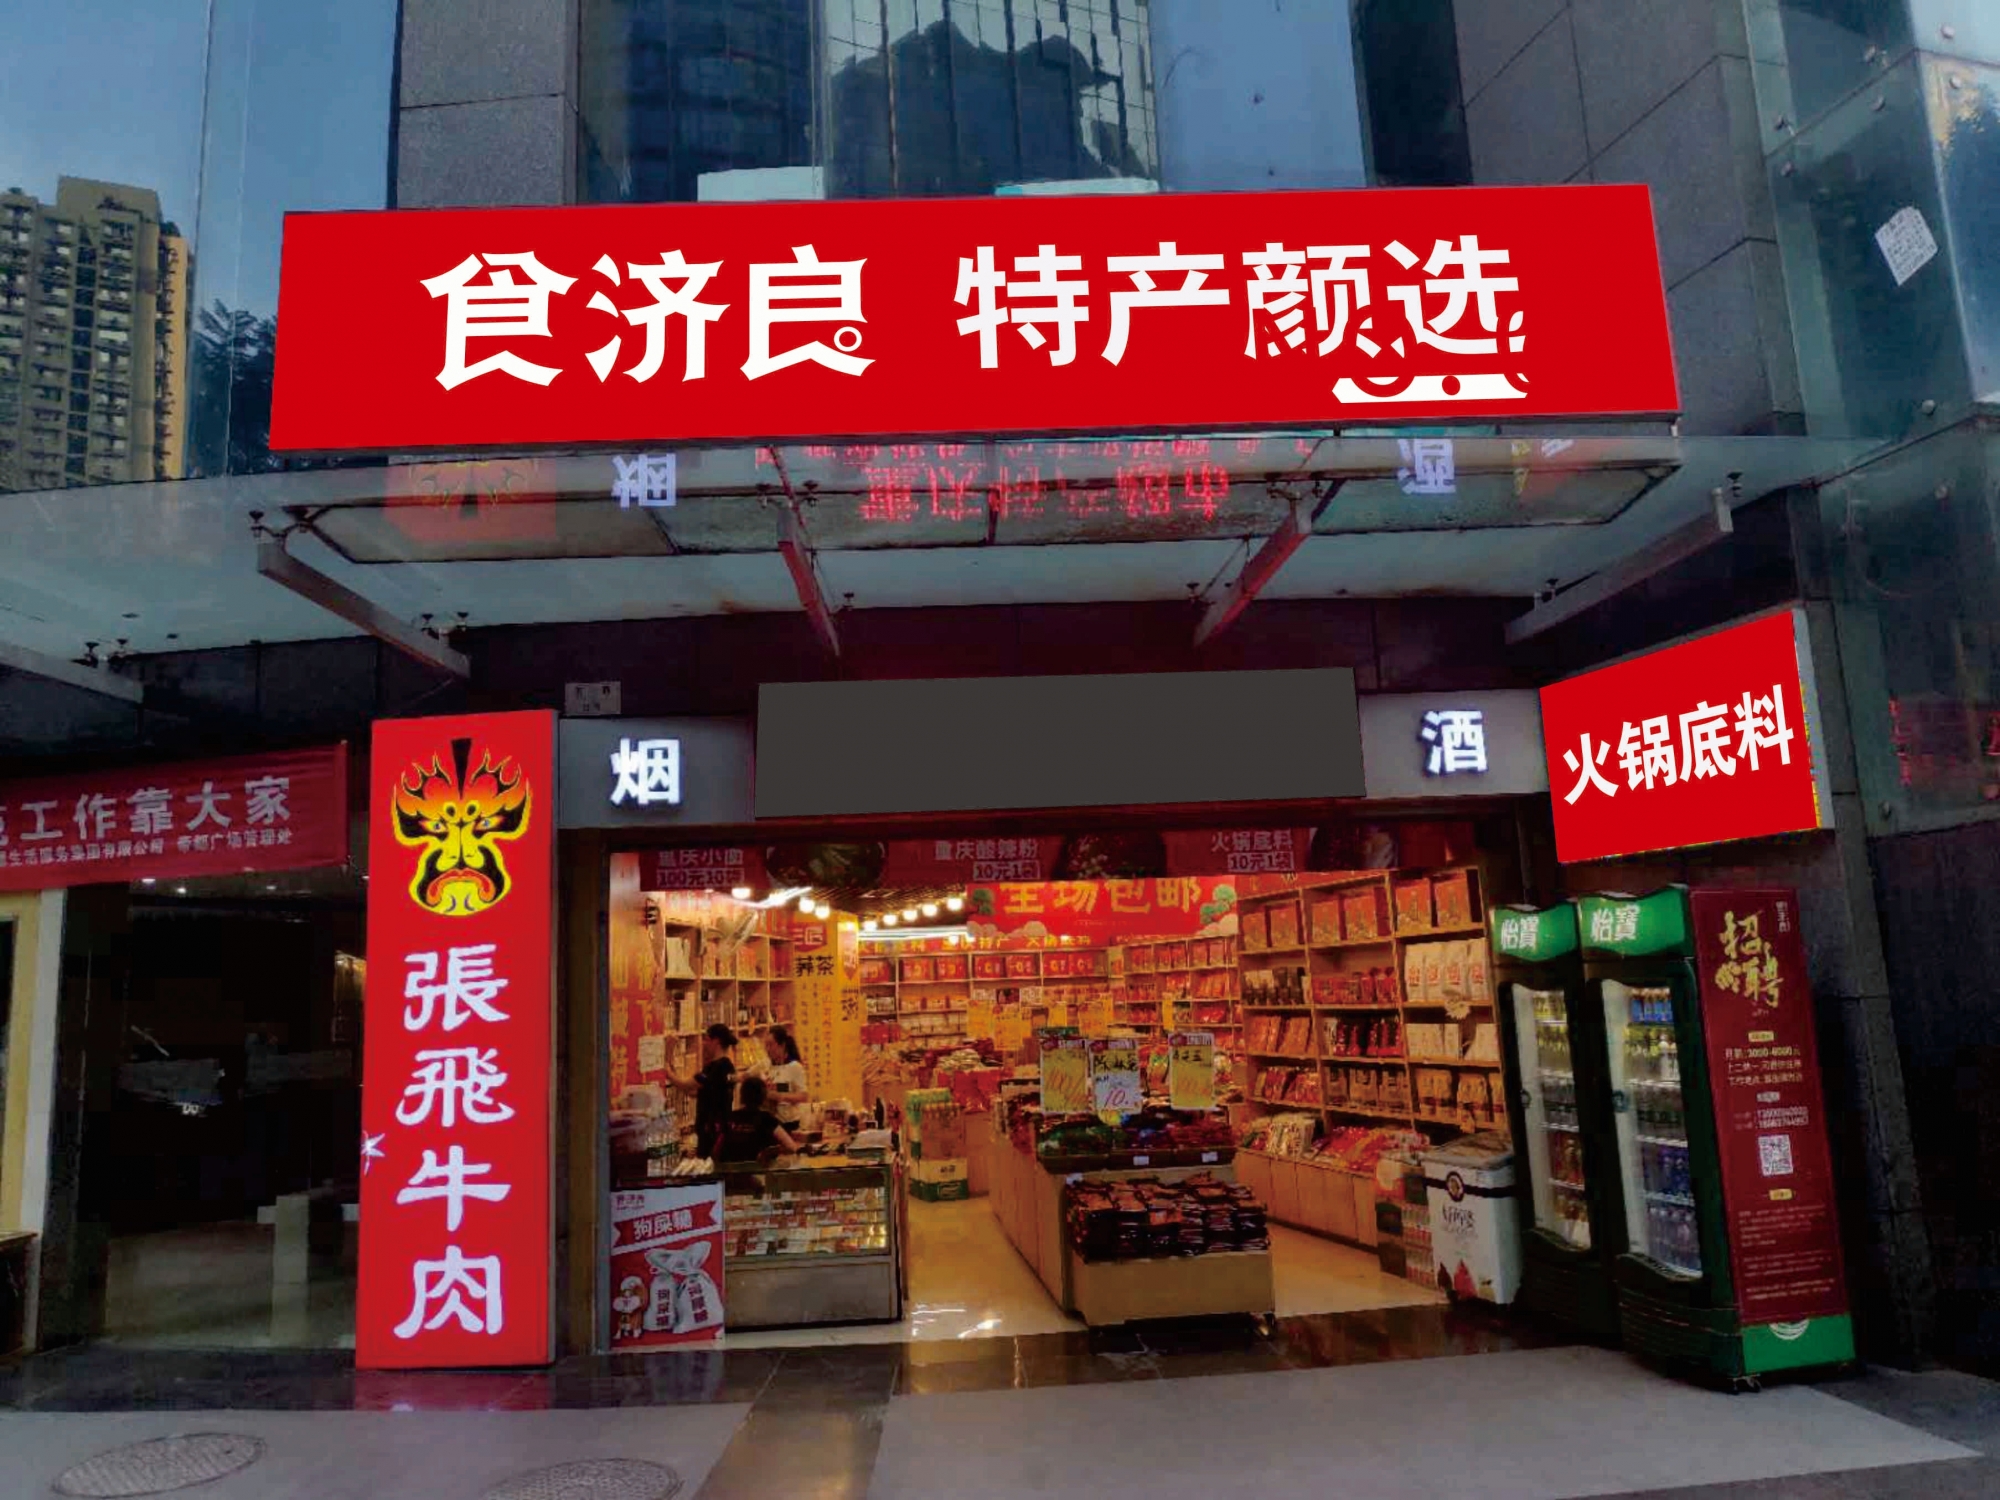 重庆食济良贸易有限公司 环境照片活动图片